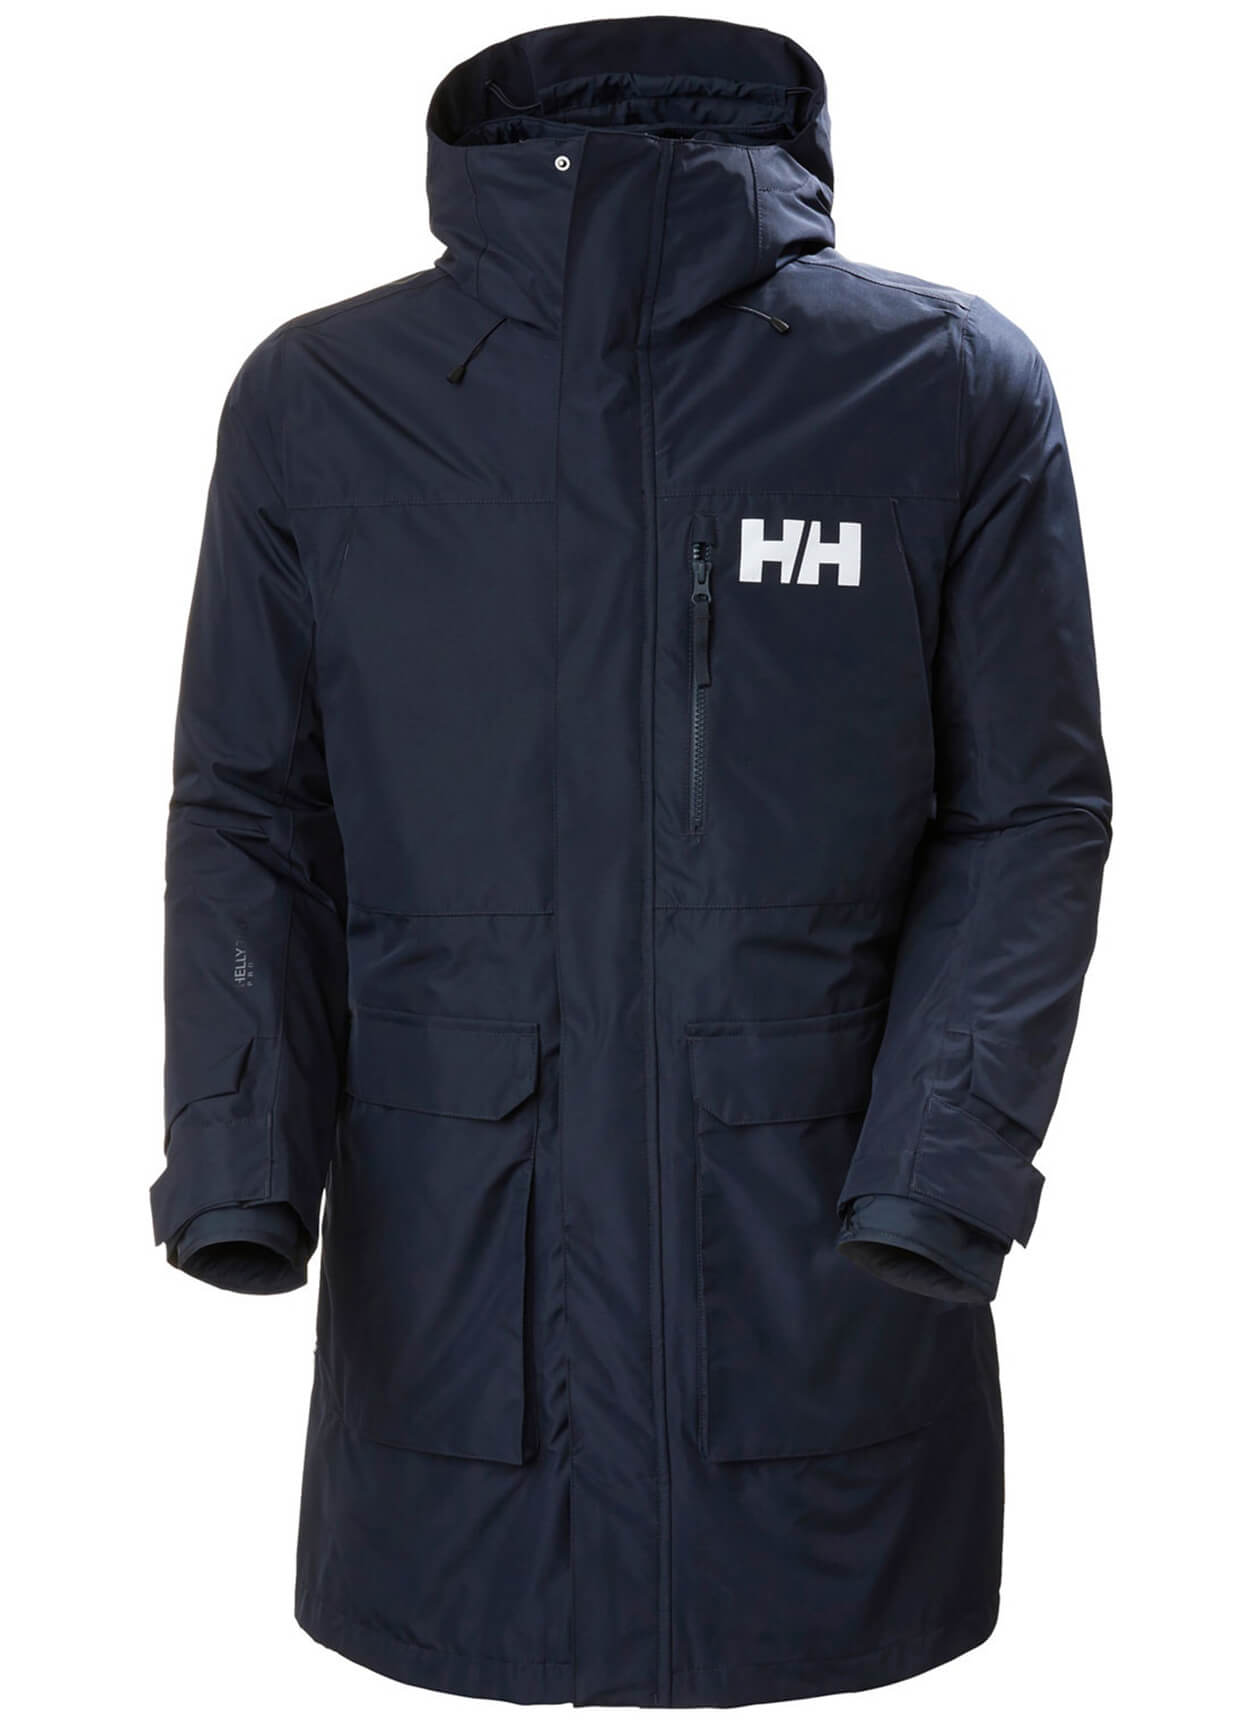 Helly Hansen 53508 - Men's Rigging Coat